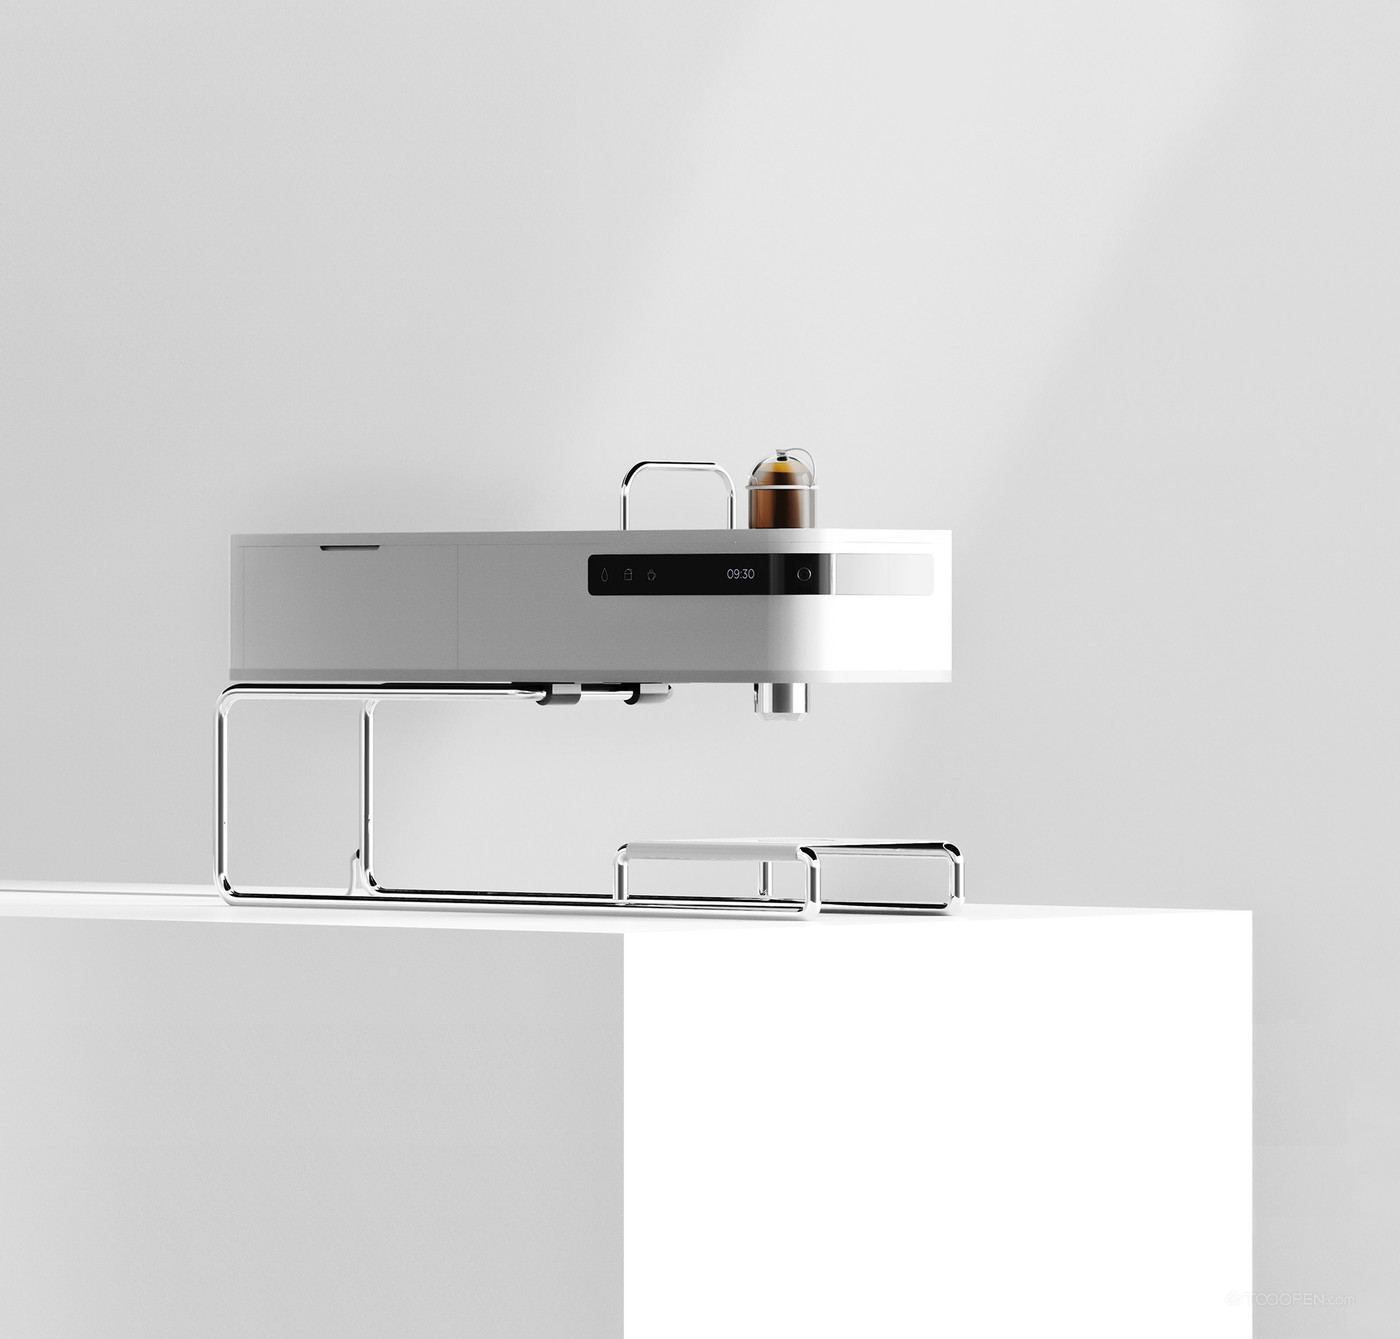 自制咖啡胶囊意式浓缩咖啡机产品设计欣赏-01